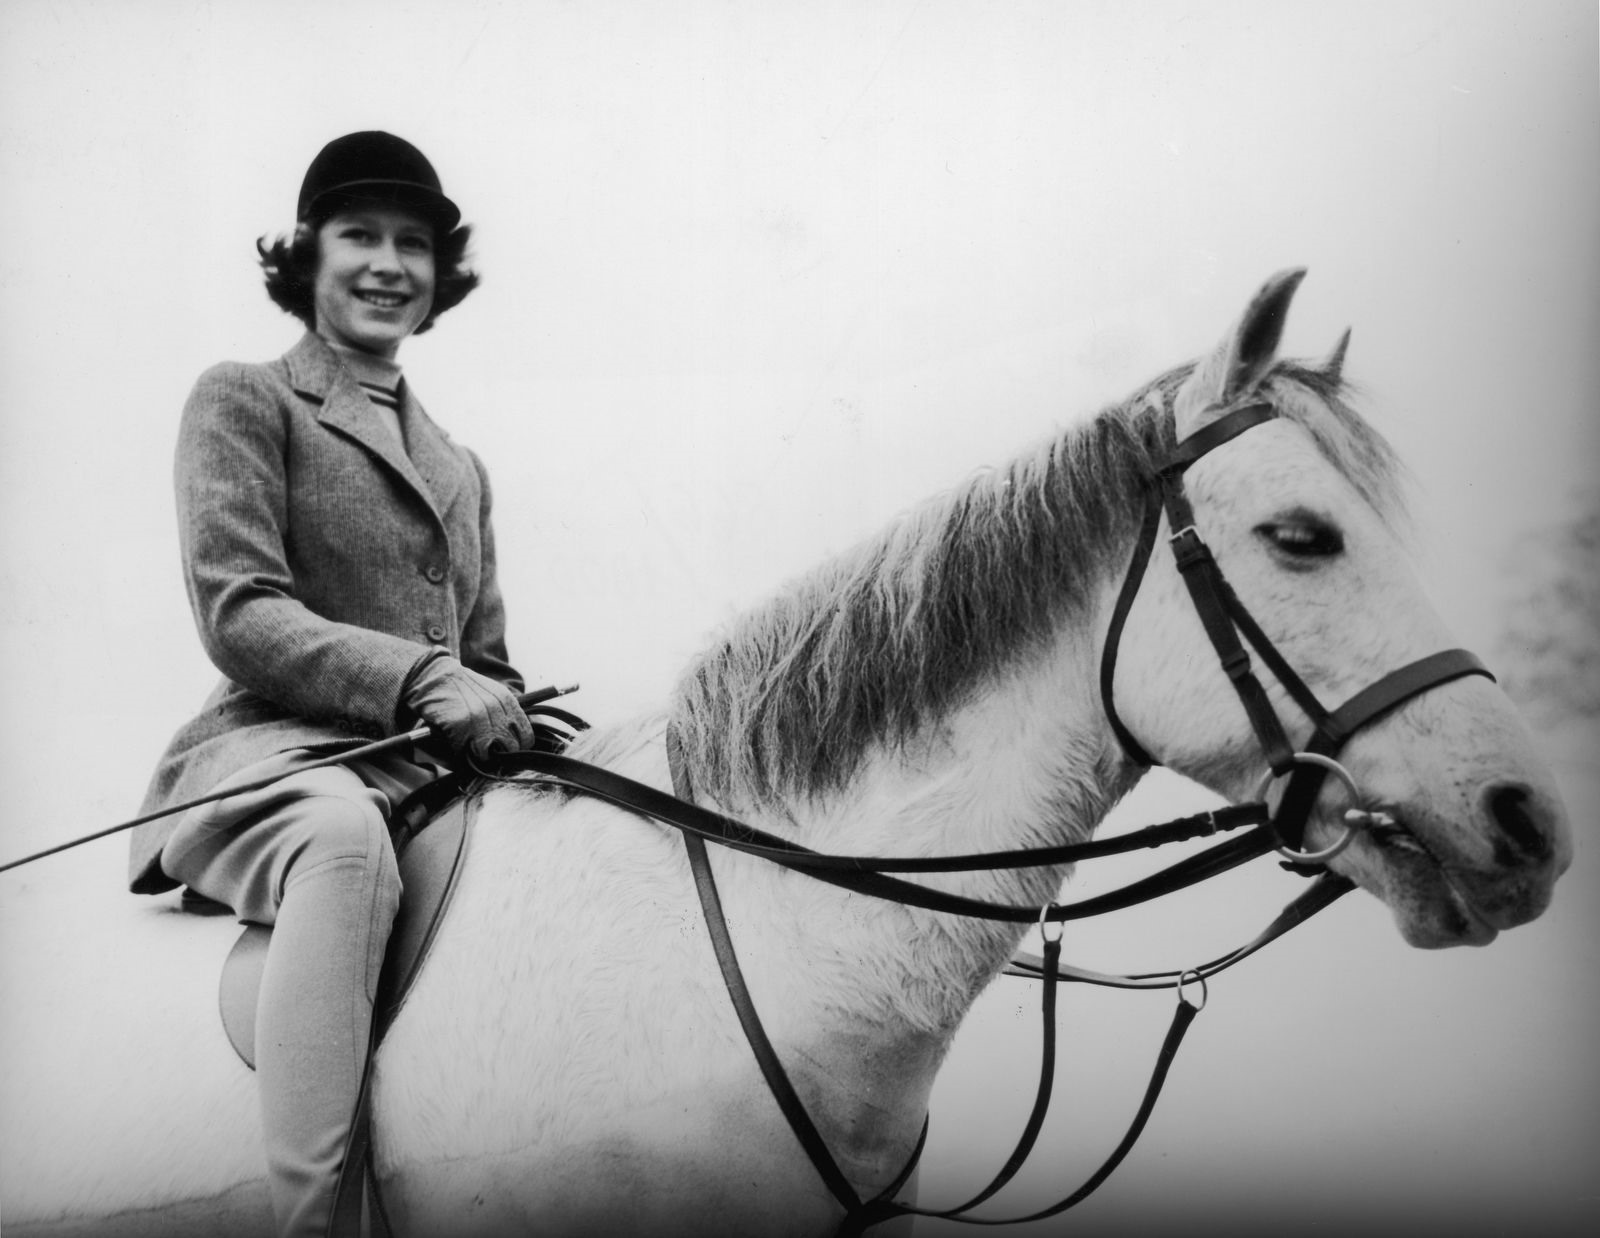 Elizabeth cưỡi ngựa ở Windsor, Anh, vào năm 1940. Bà là người rất yêu ngựa. Ảnh: Getty